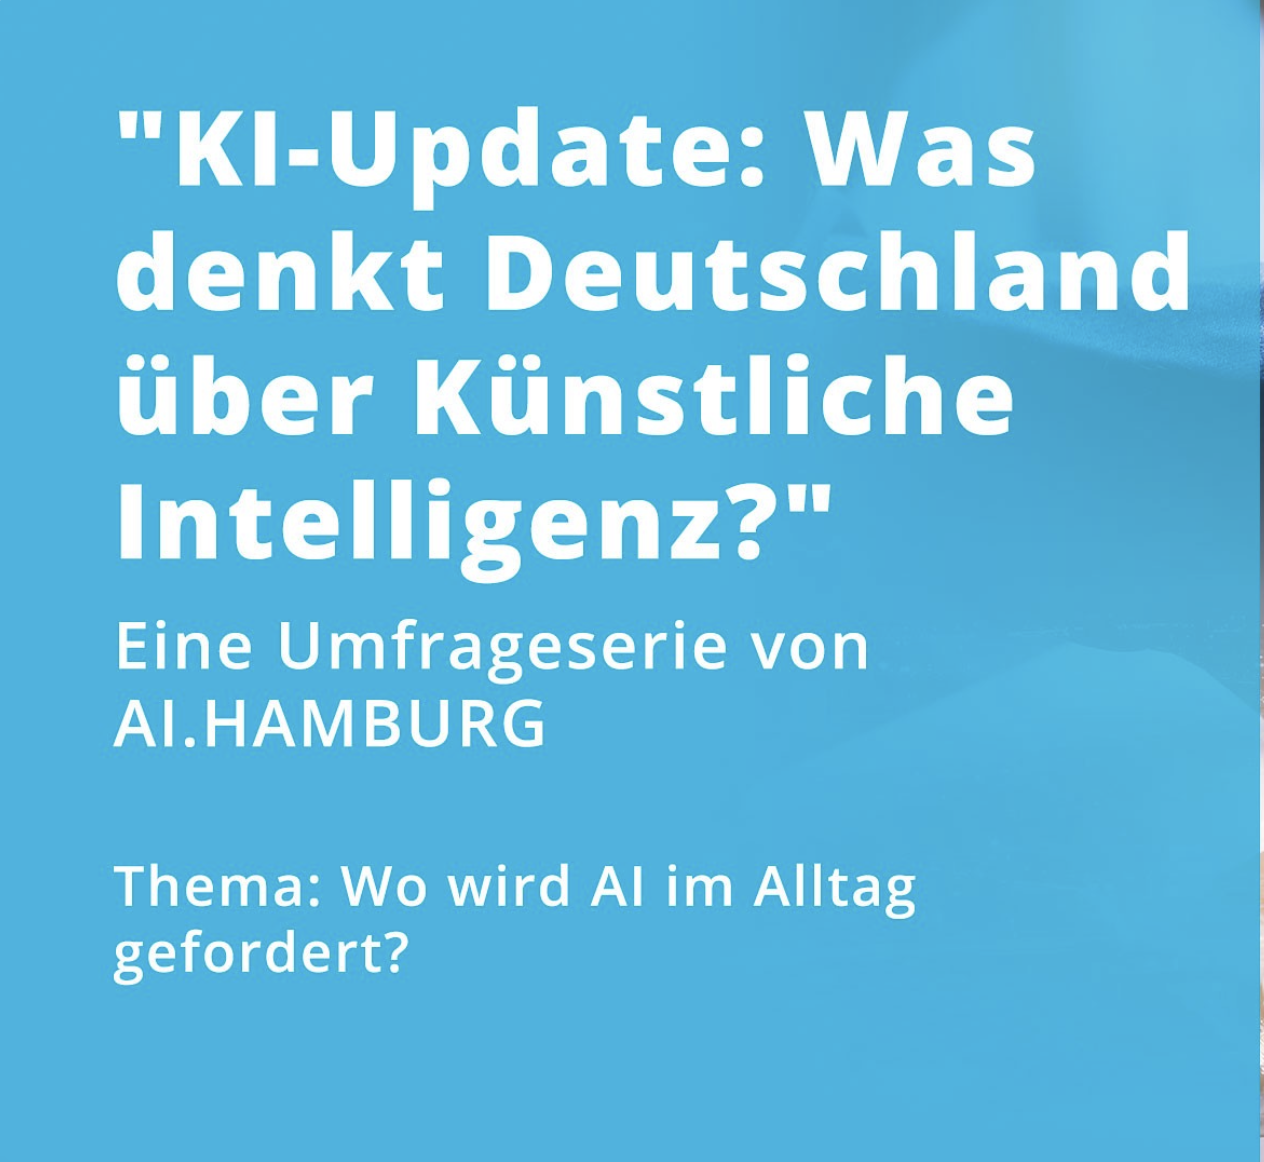 KI-Update Nr. 4. Künstliche Intelligenz im Alltag. Mit AI.HAMBURG